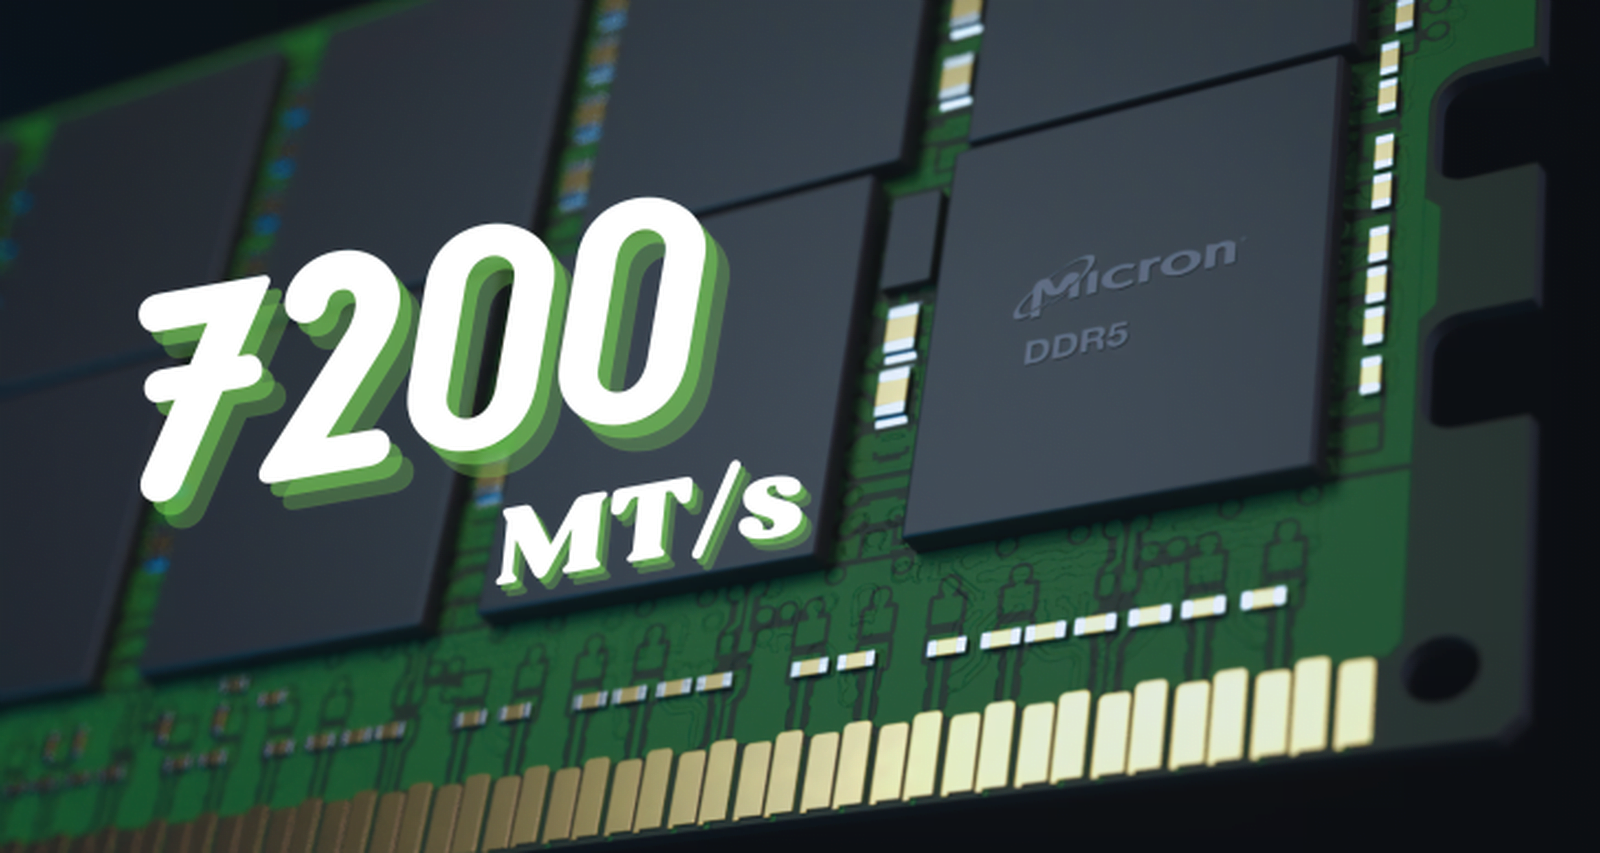 Micron DDR5 7200 MTps MMOSITE - Thông tin công nghệ, review, thủ thuật PC, gaming